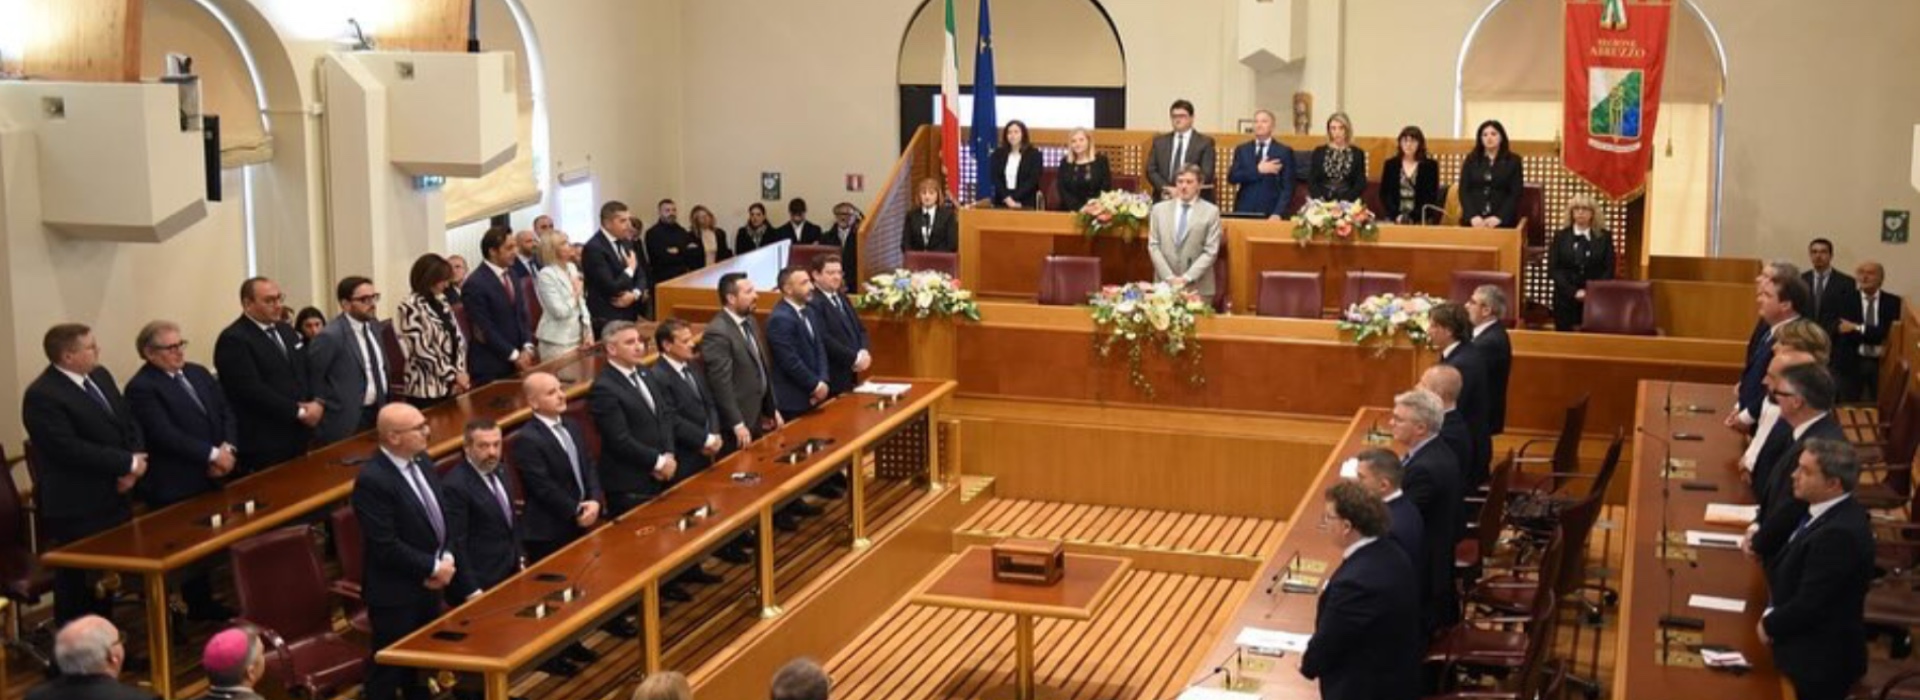 Abruzzo, nuova Giunta regionale: restano le tensioni nella maggioranza